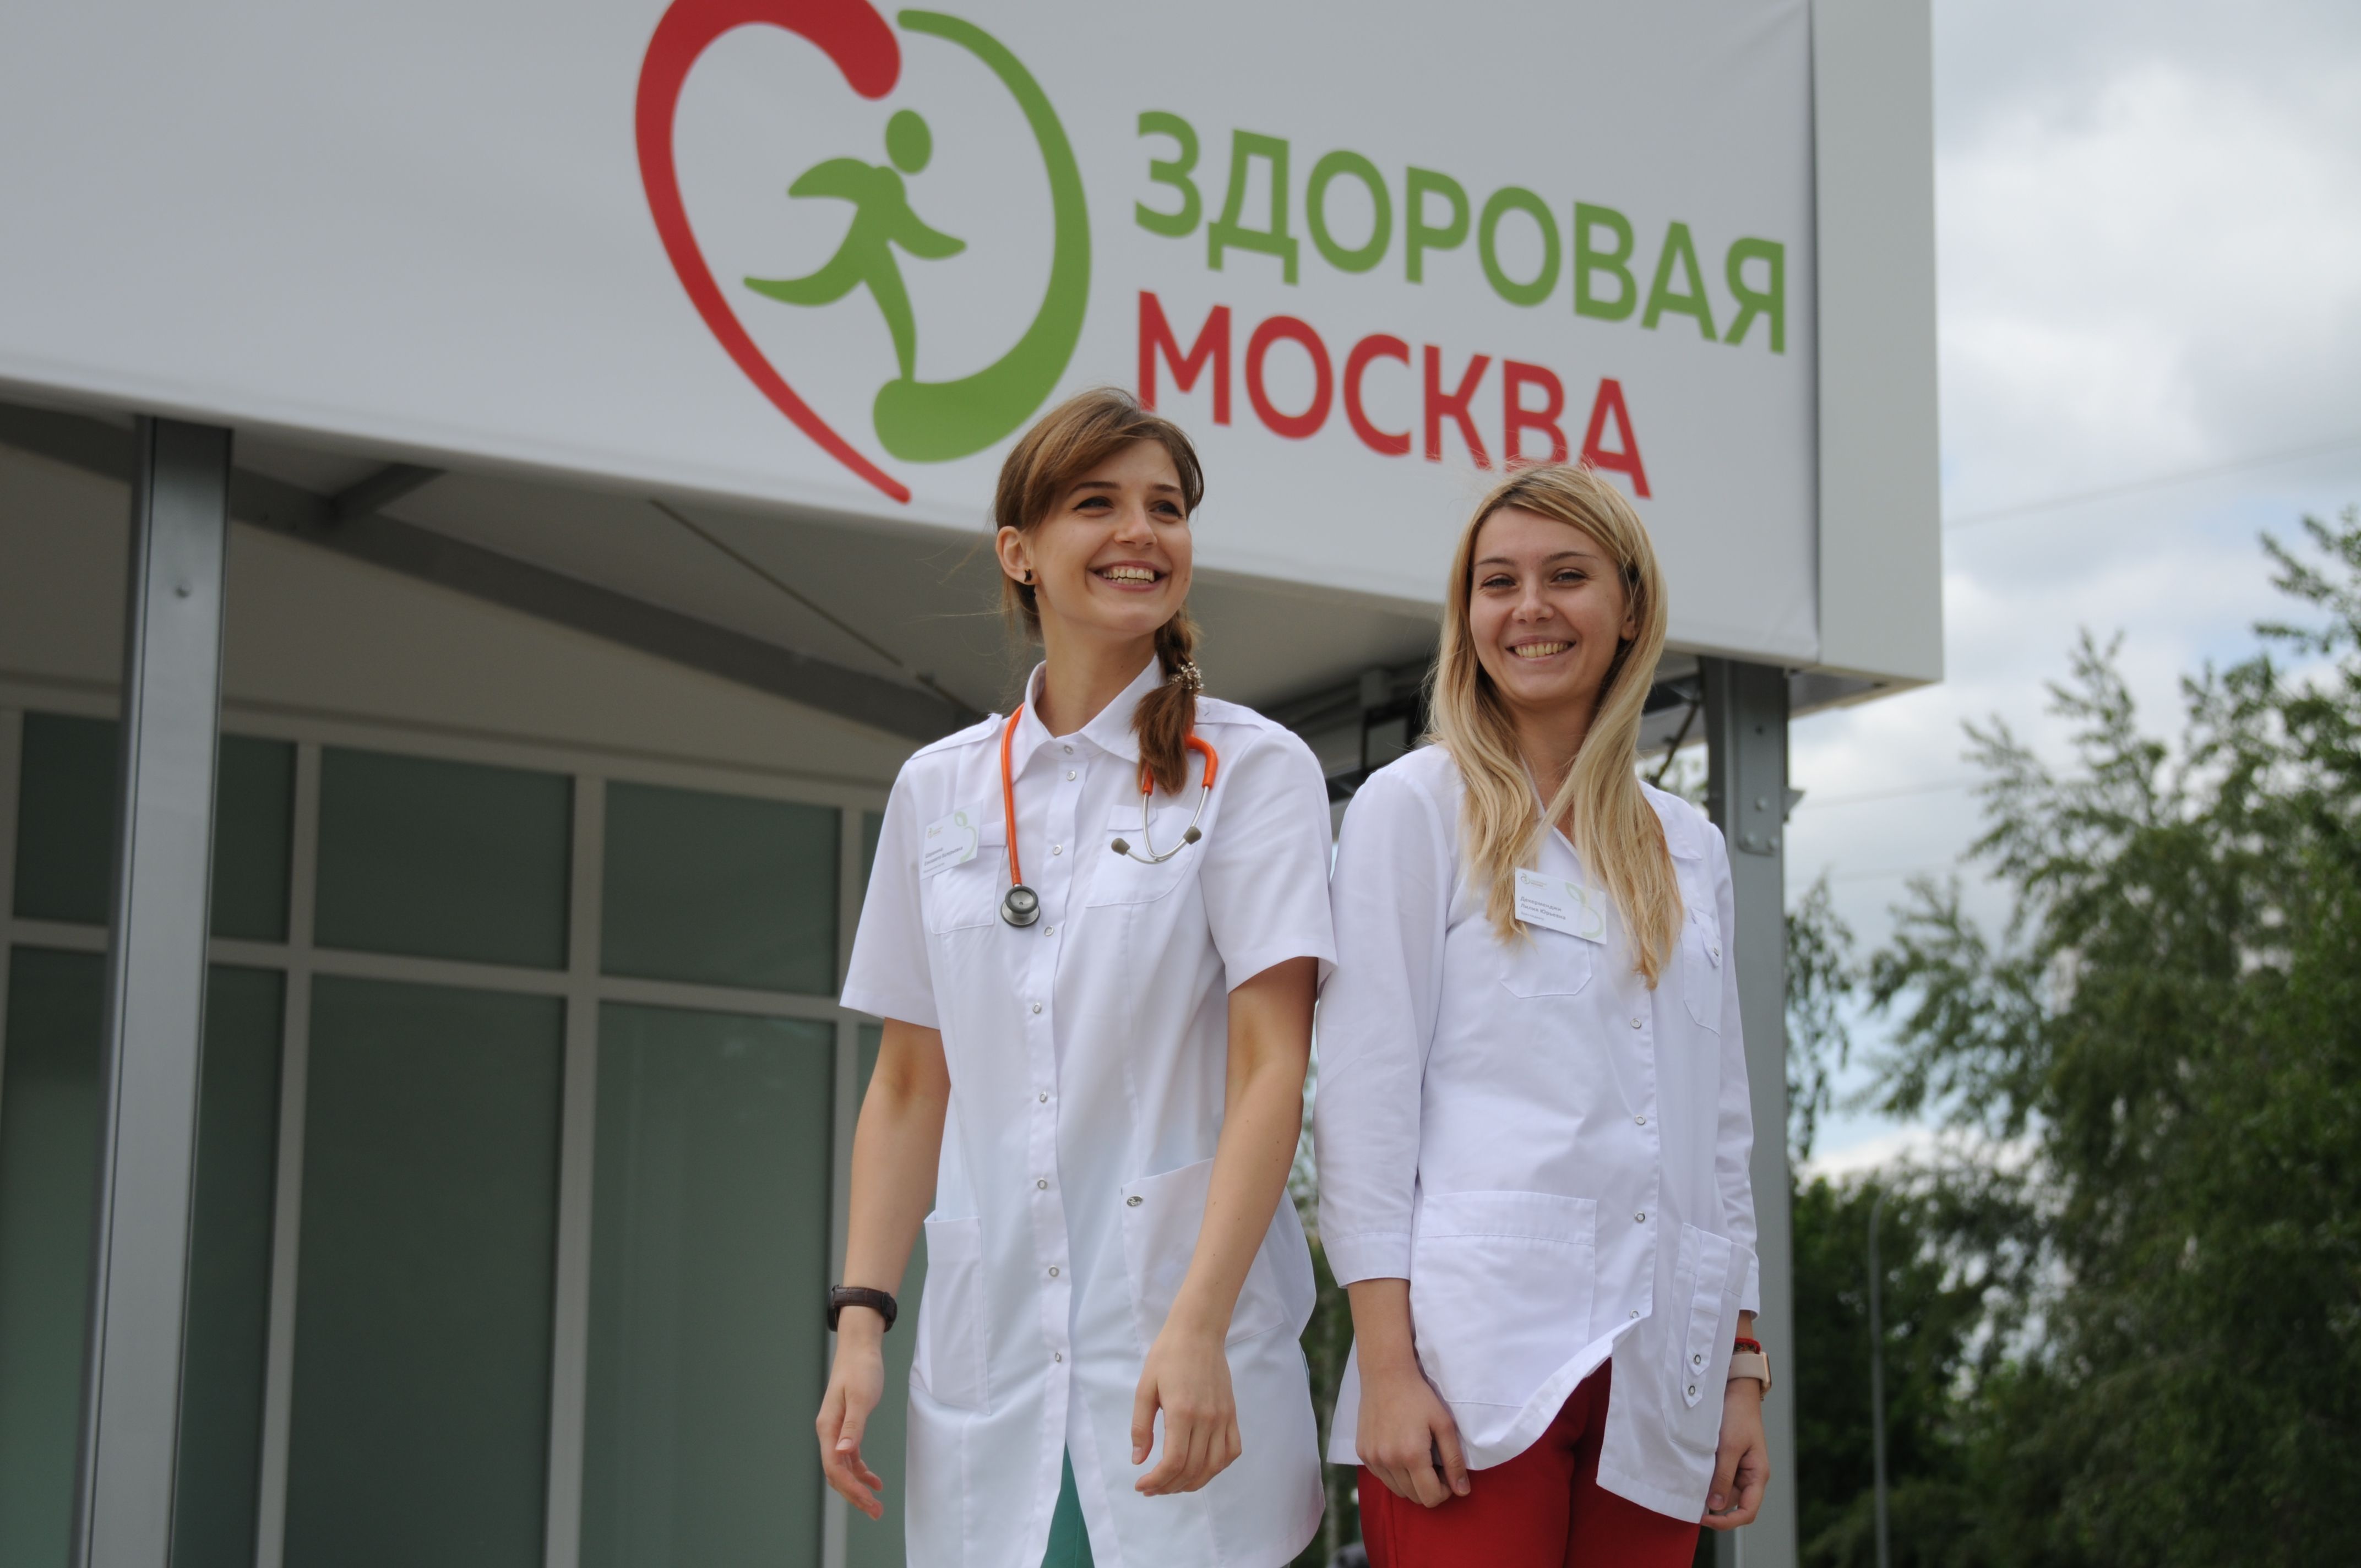 Более 200 тыс человек обследовались в павильонах «Здоровая Москва»